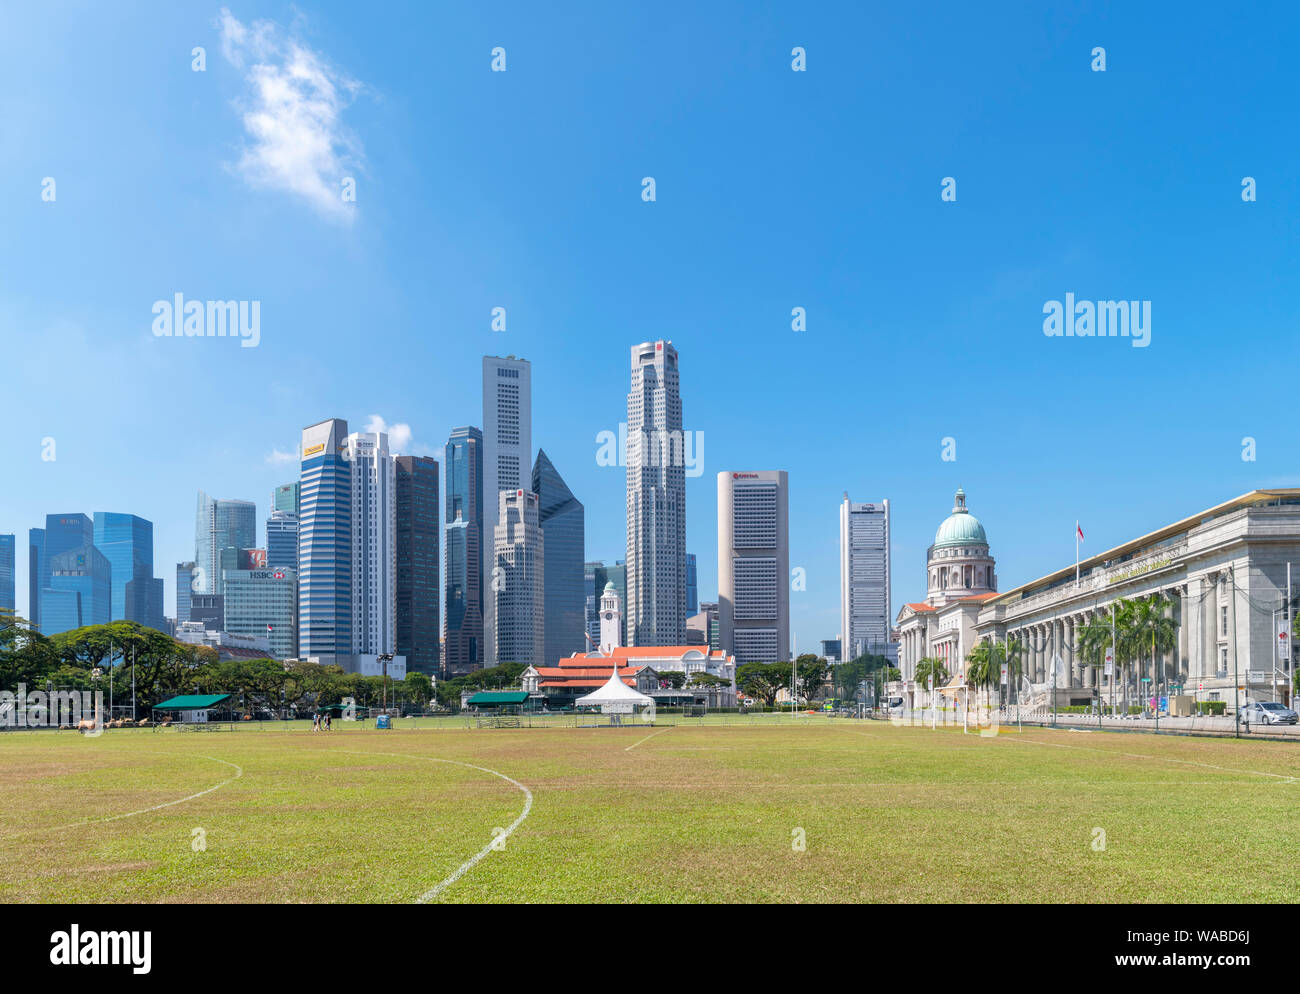 Le centre-ville et de la Galerie nationale de Singapour vu du Padang, un terrain de sport dans le centre-ville, la ville de Singapour, Singapour Banque D'Images